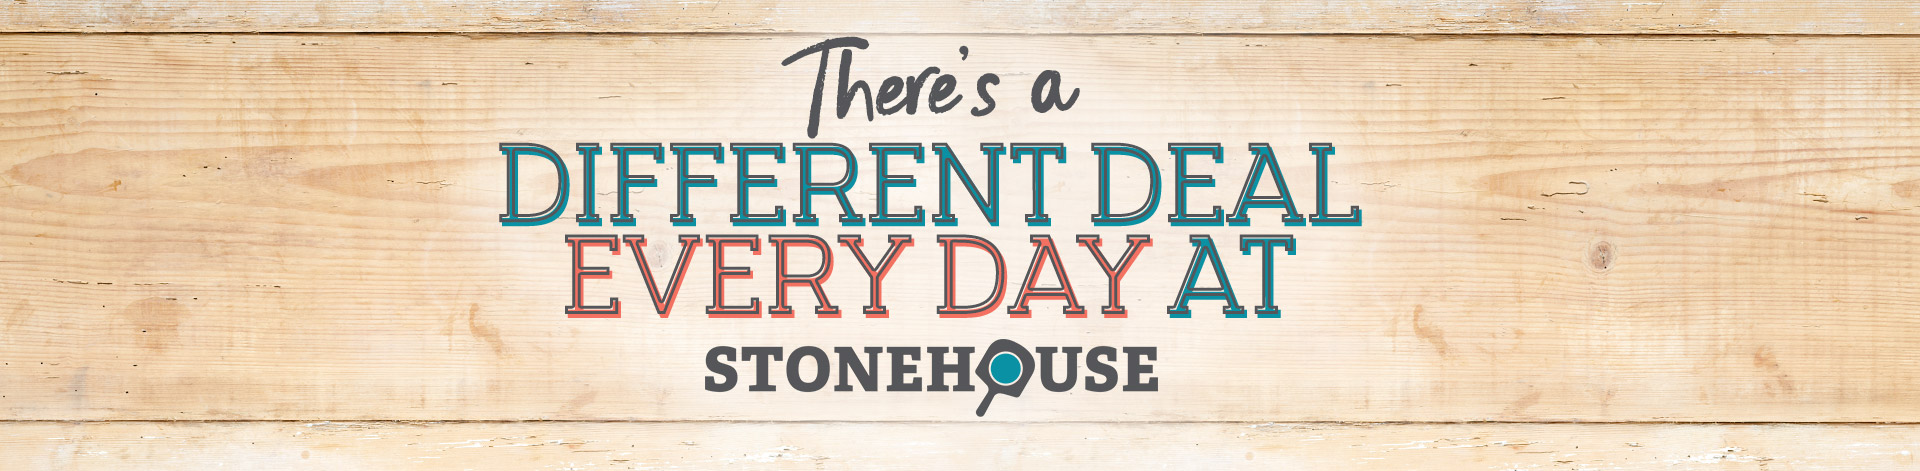 stonehouse-offers-dailydeals-banner.jpg